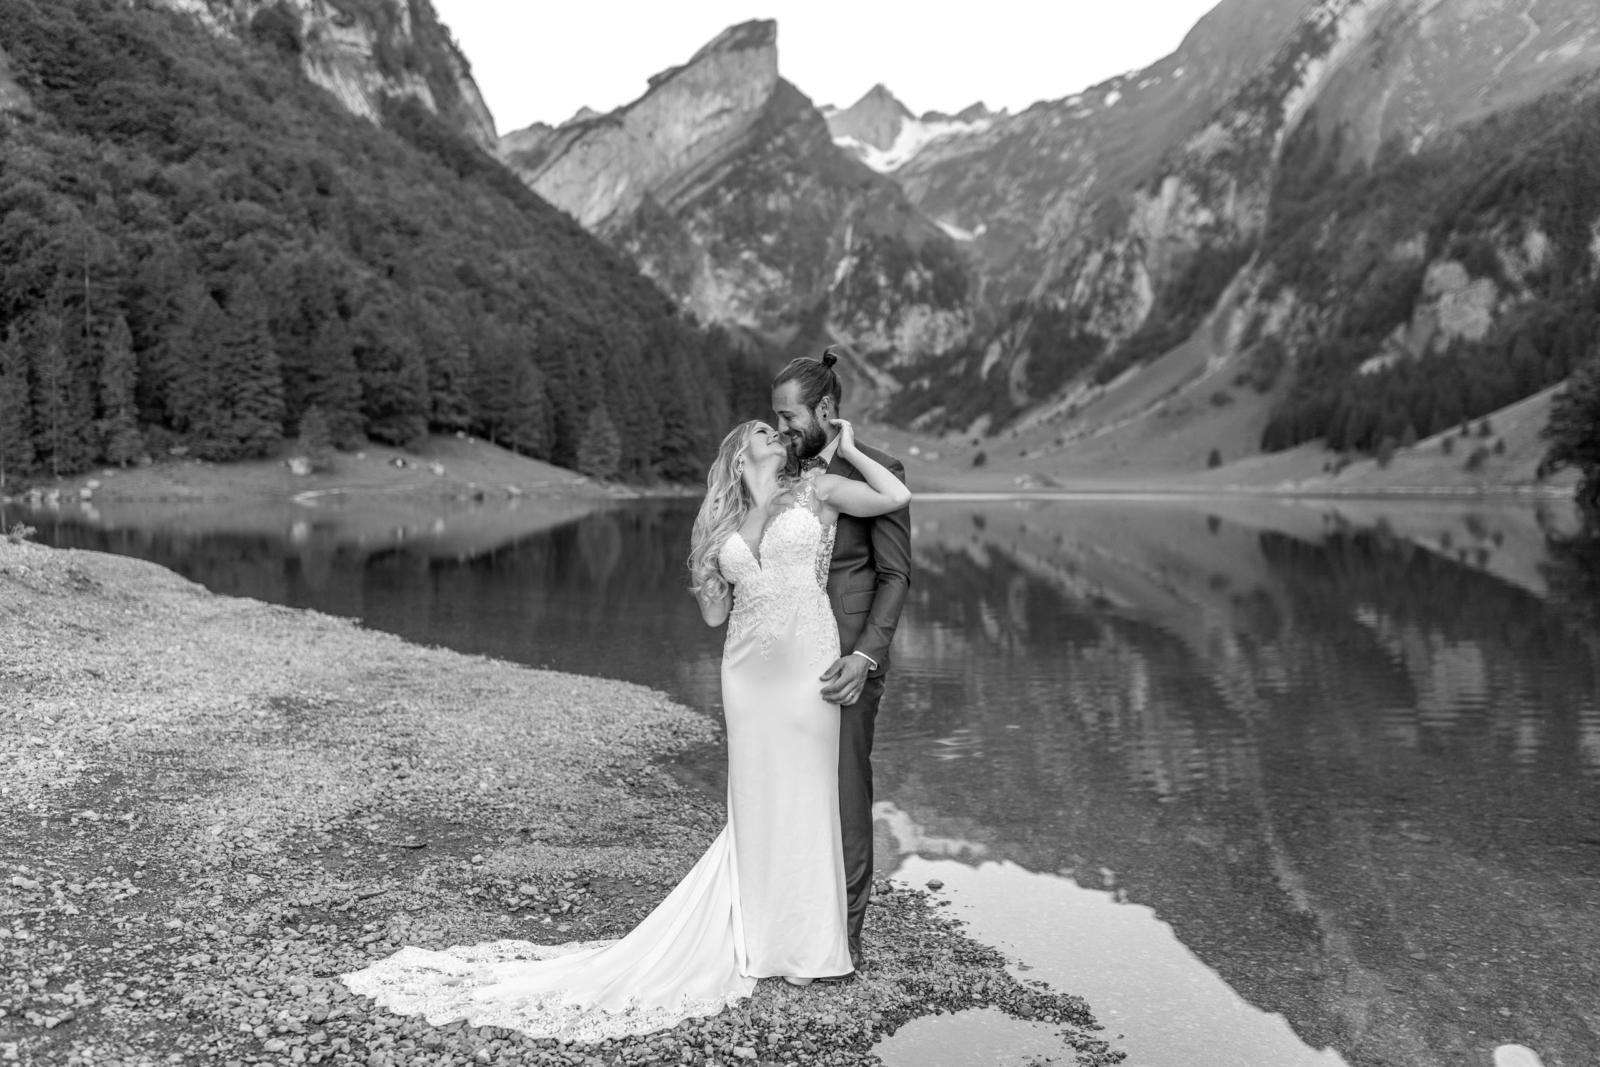 romantic black and white wedding photo at Lake Seealpsee in Switzerland